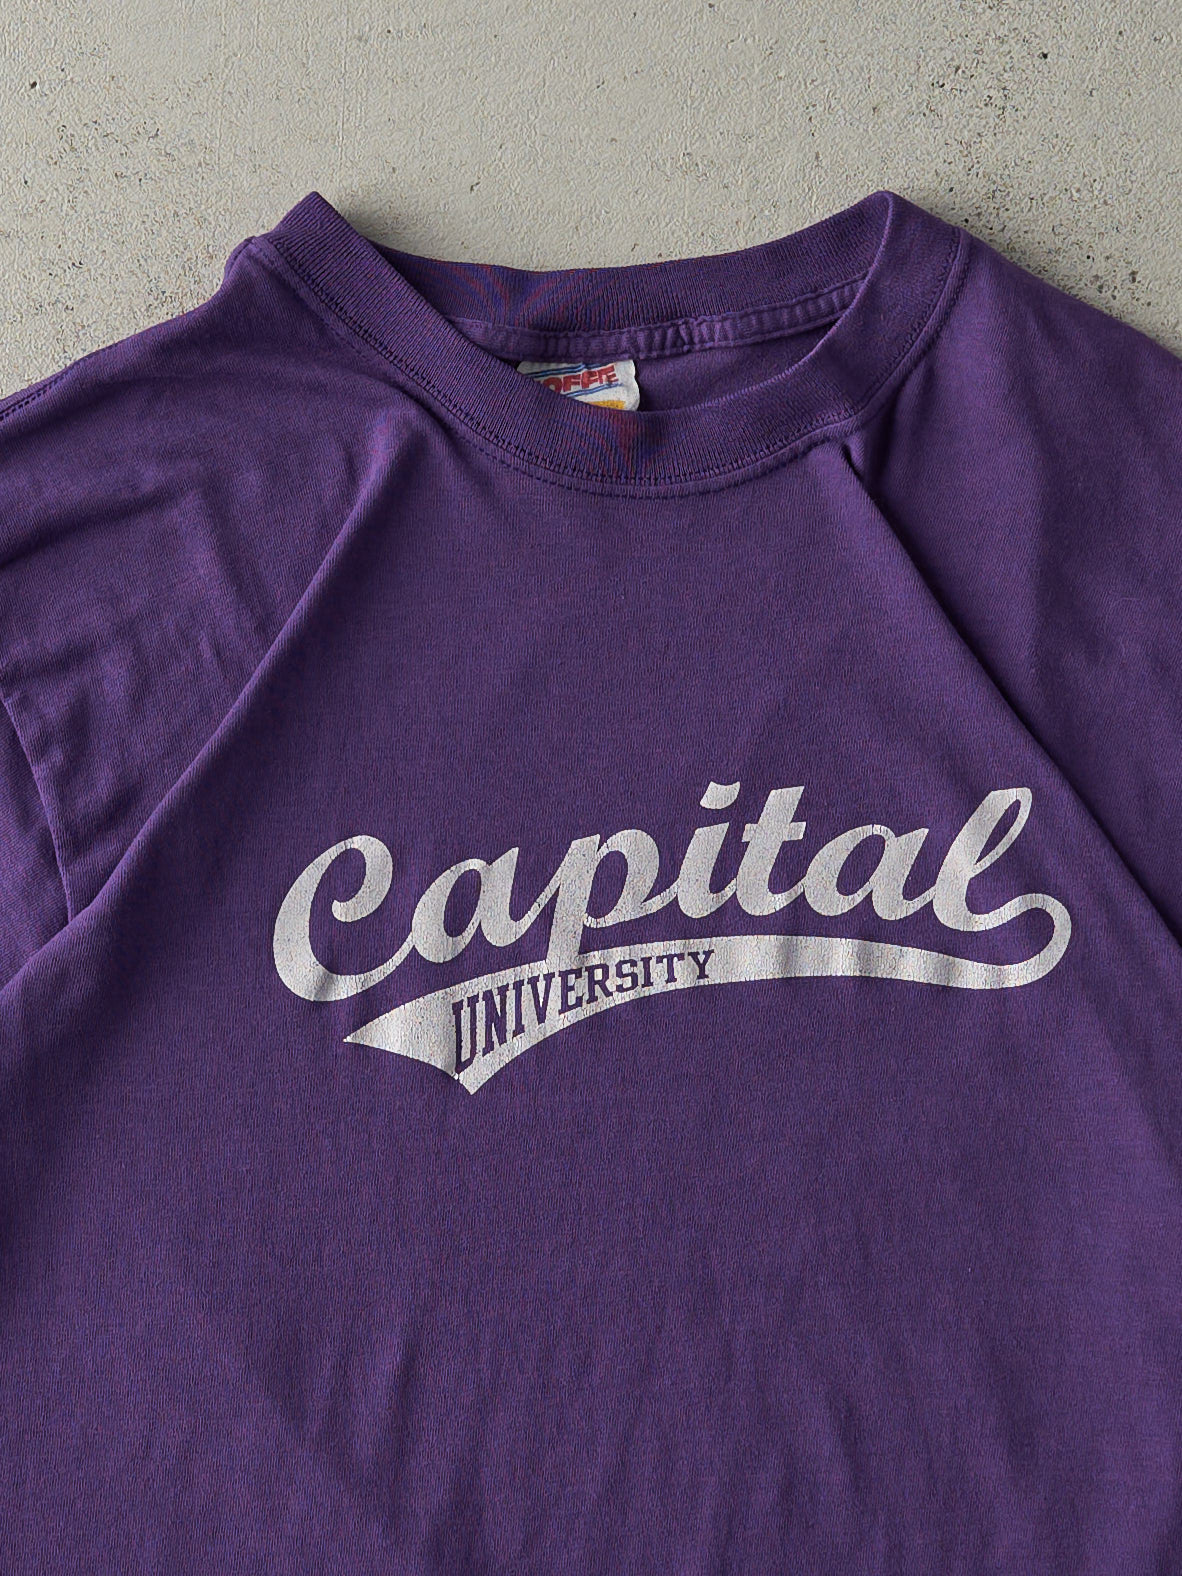 Vintage 90s Purple Capital University Tee (M)